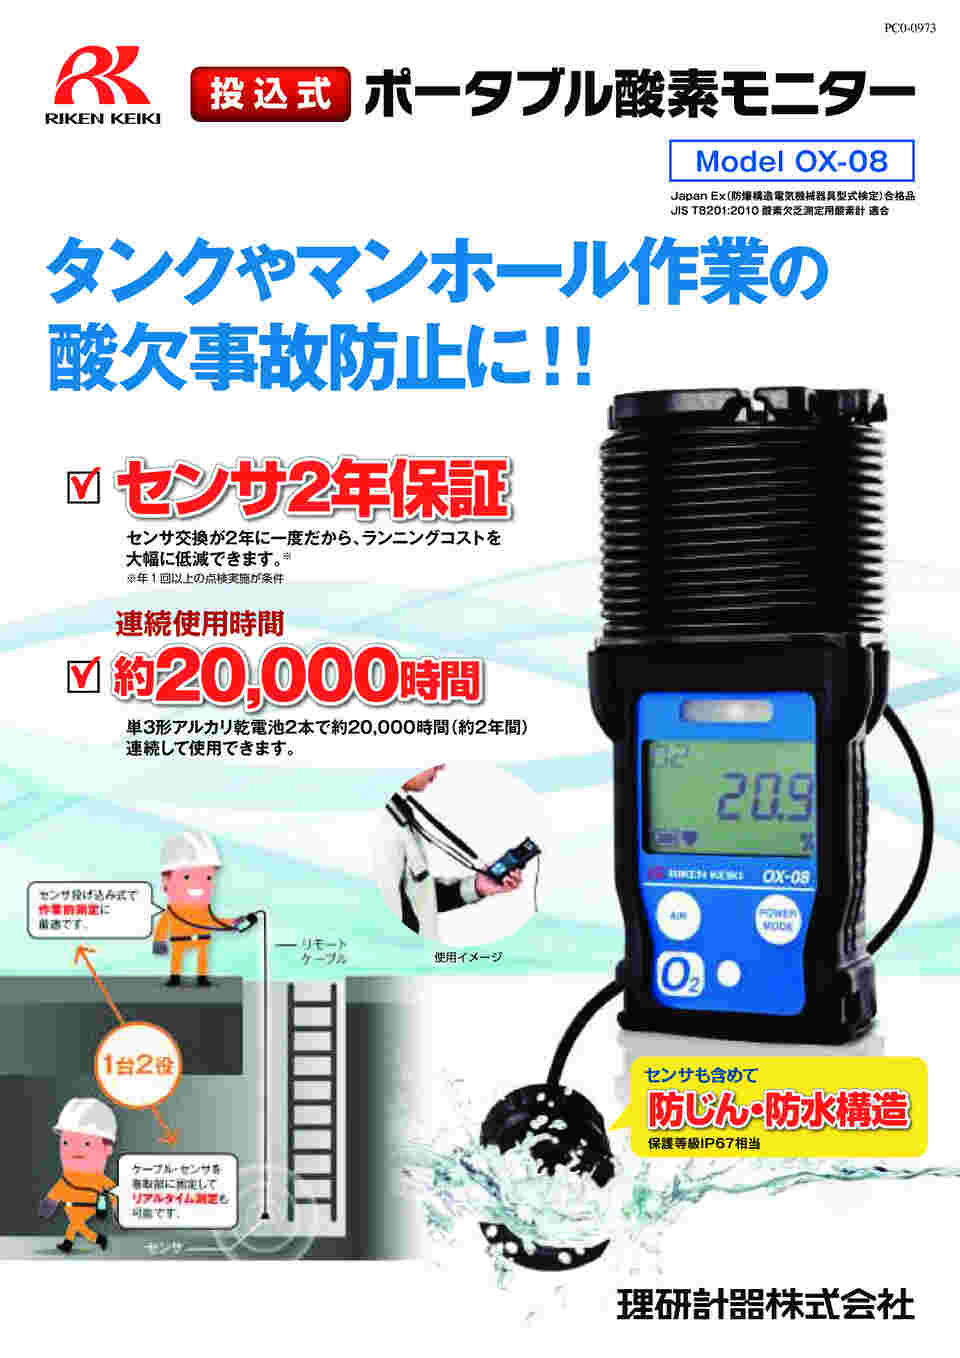 62-9229-57 ポータブル酸素モニター OX-08